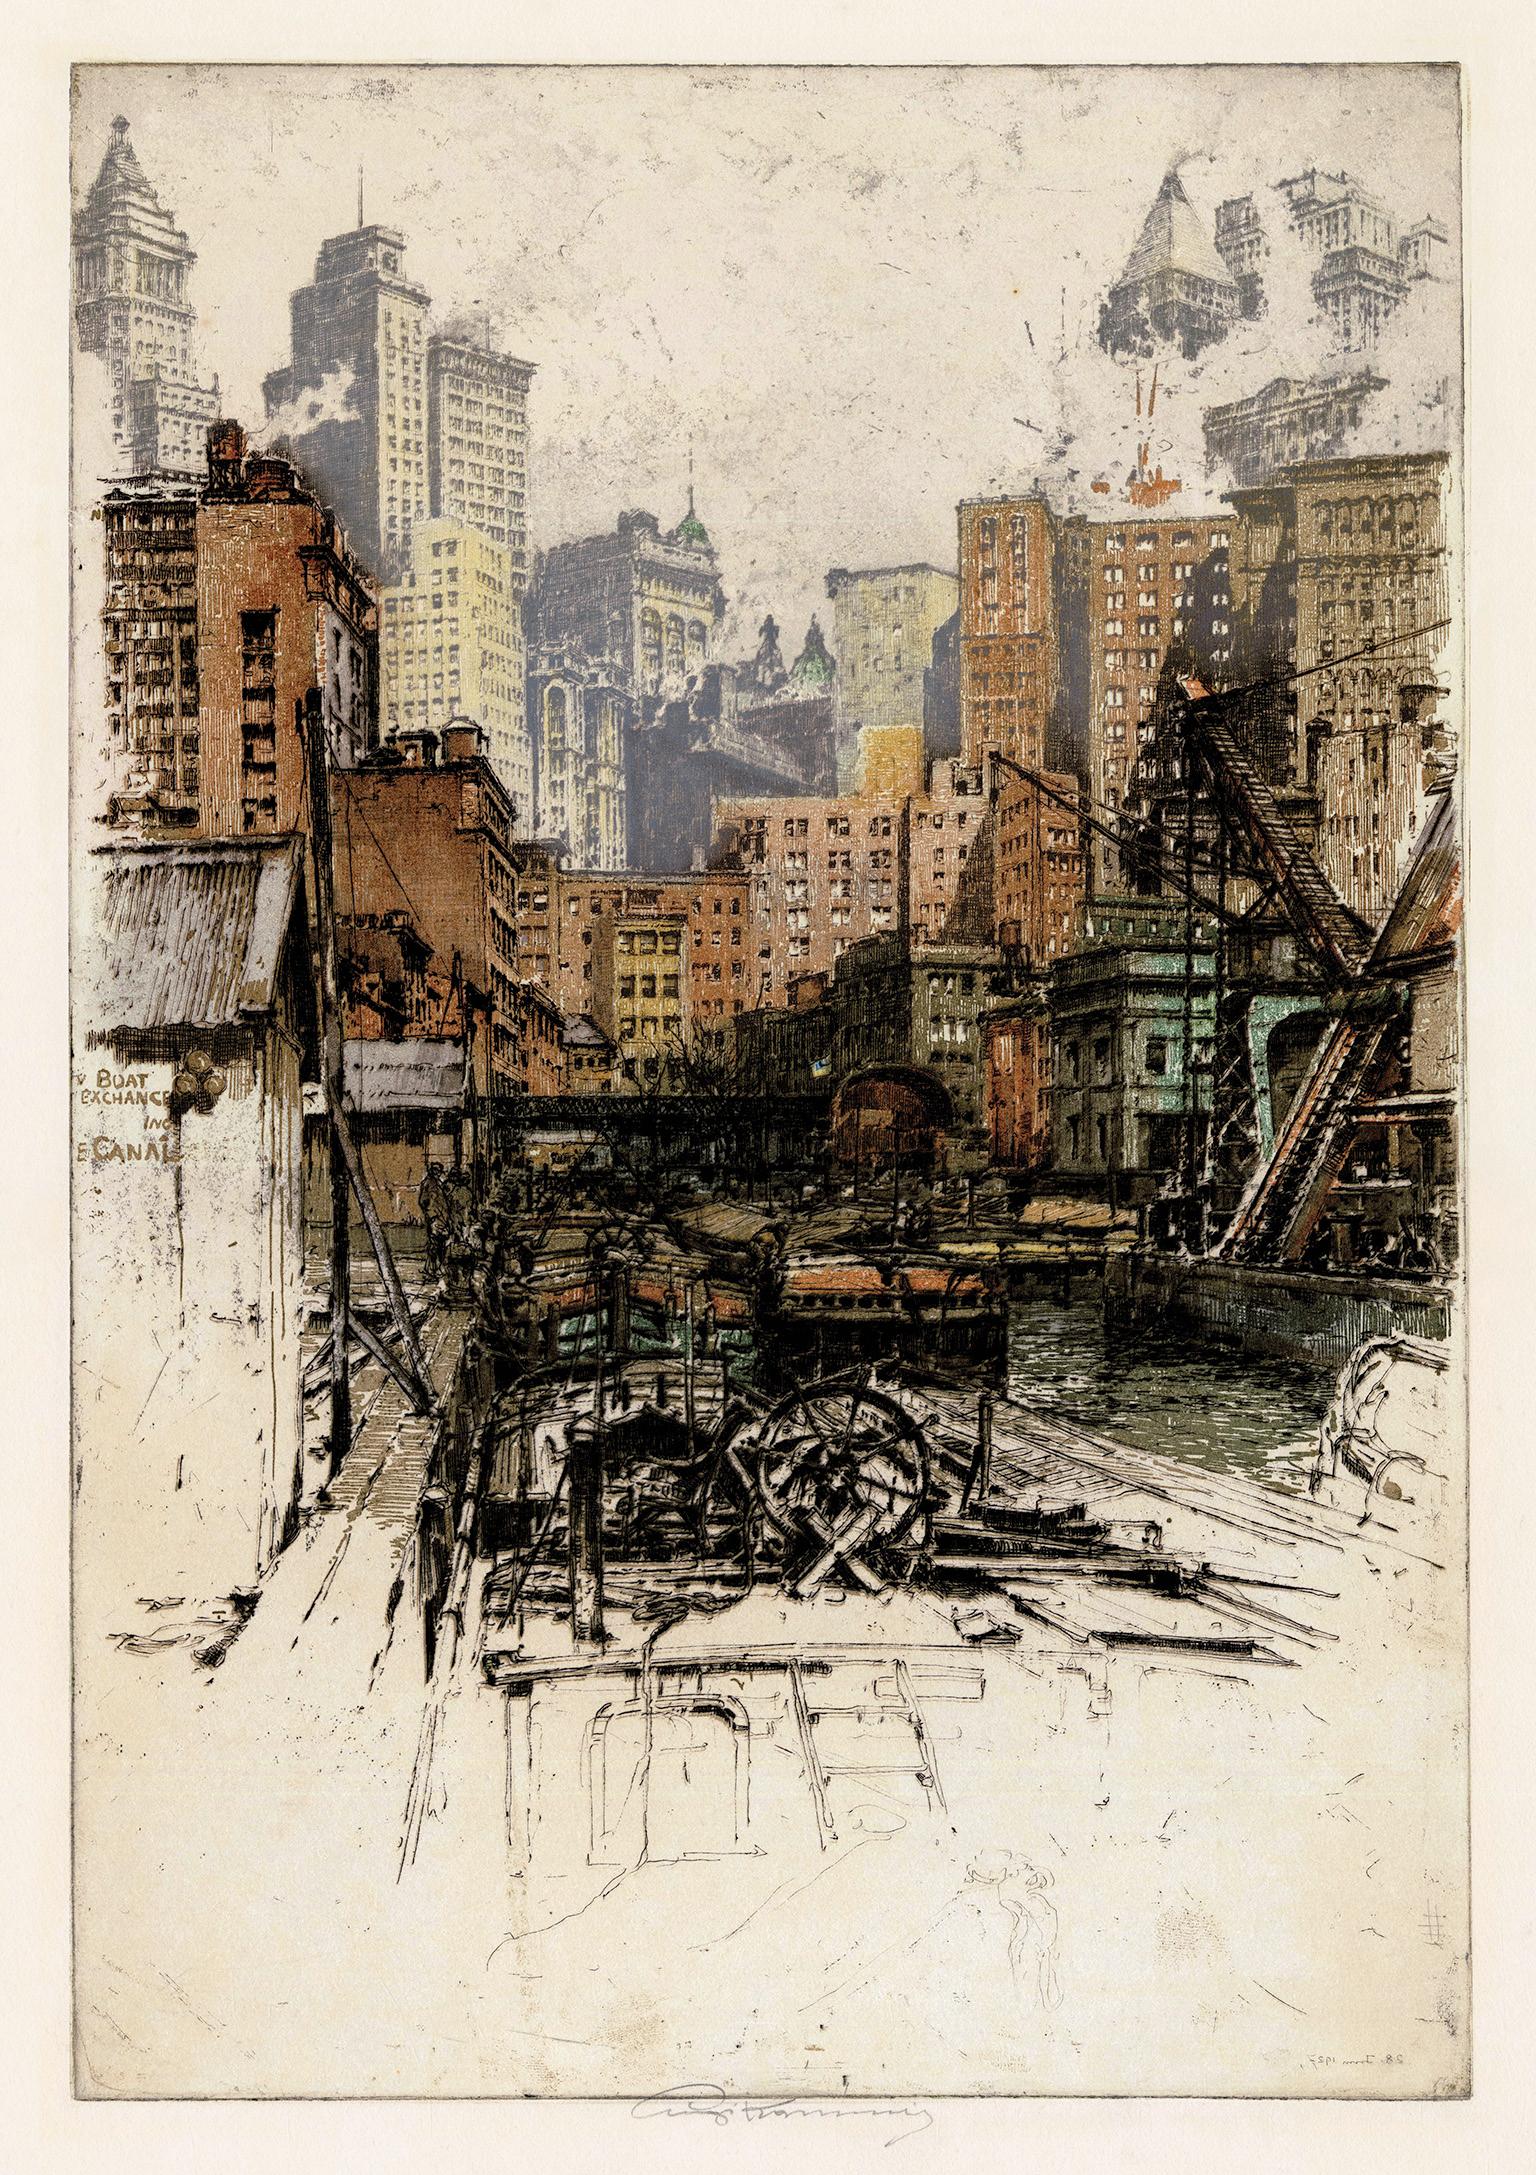 Luigi Kasimir Landscape Print – Coenties Slip" - 1920er Jahre in Lower Manhattan, Finanzviertel